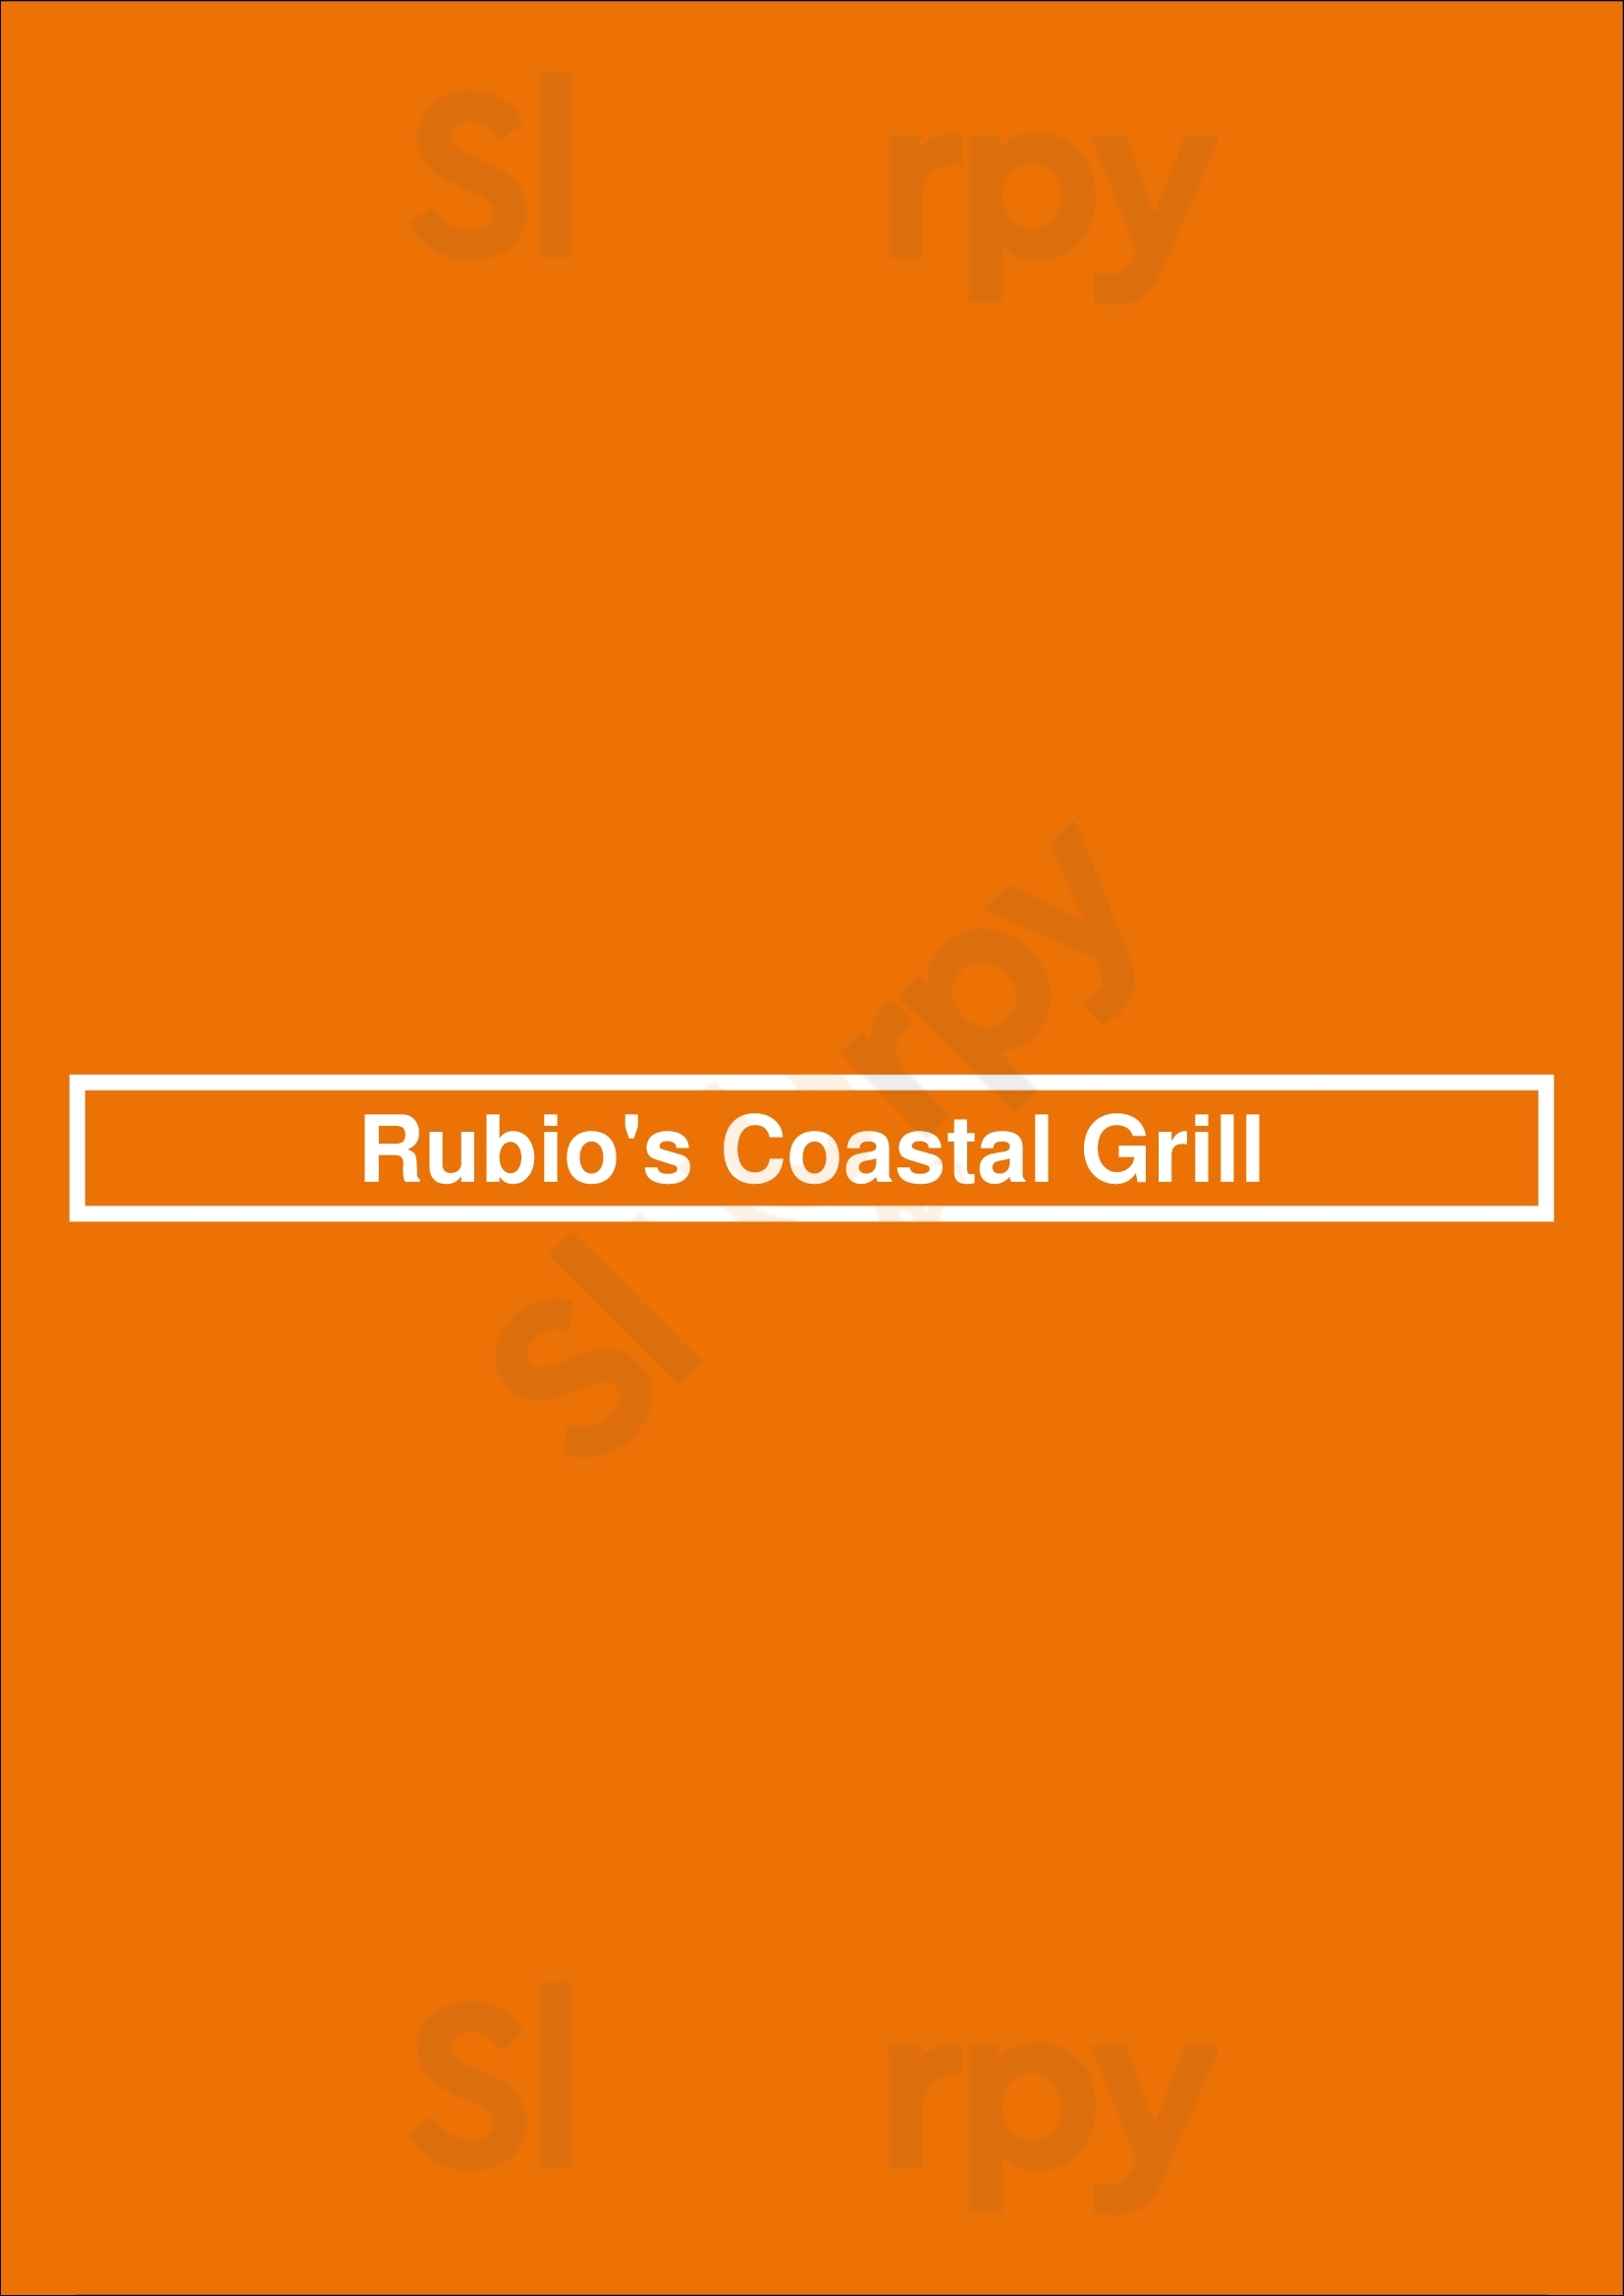 Rubio's Coastal Grill Marina del Rey Menu - 1